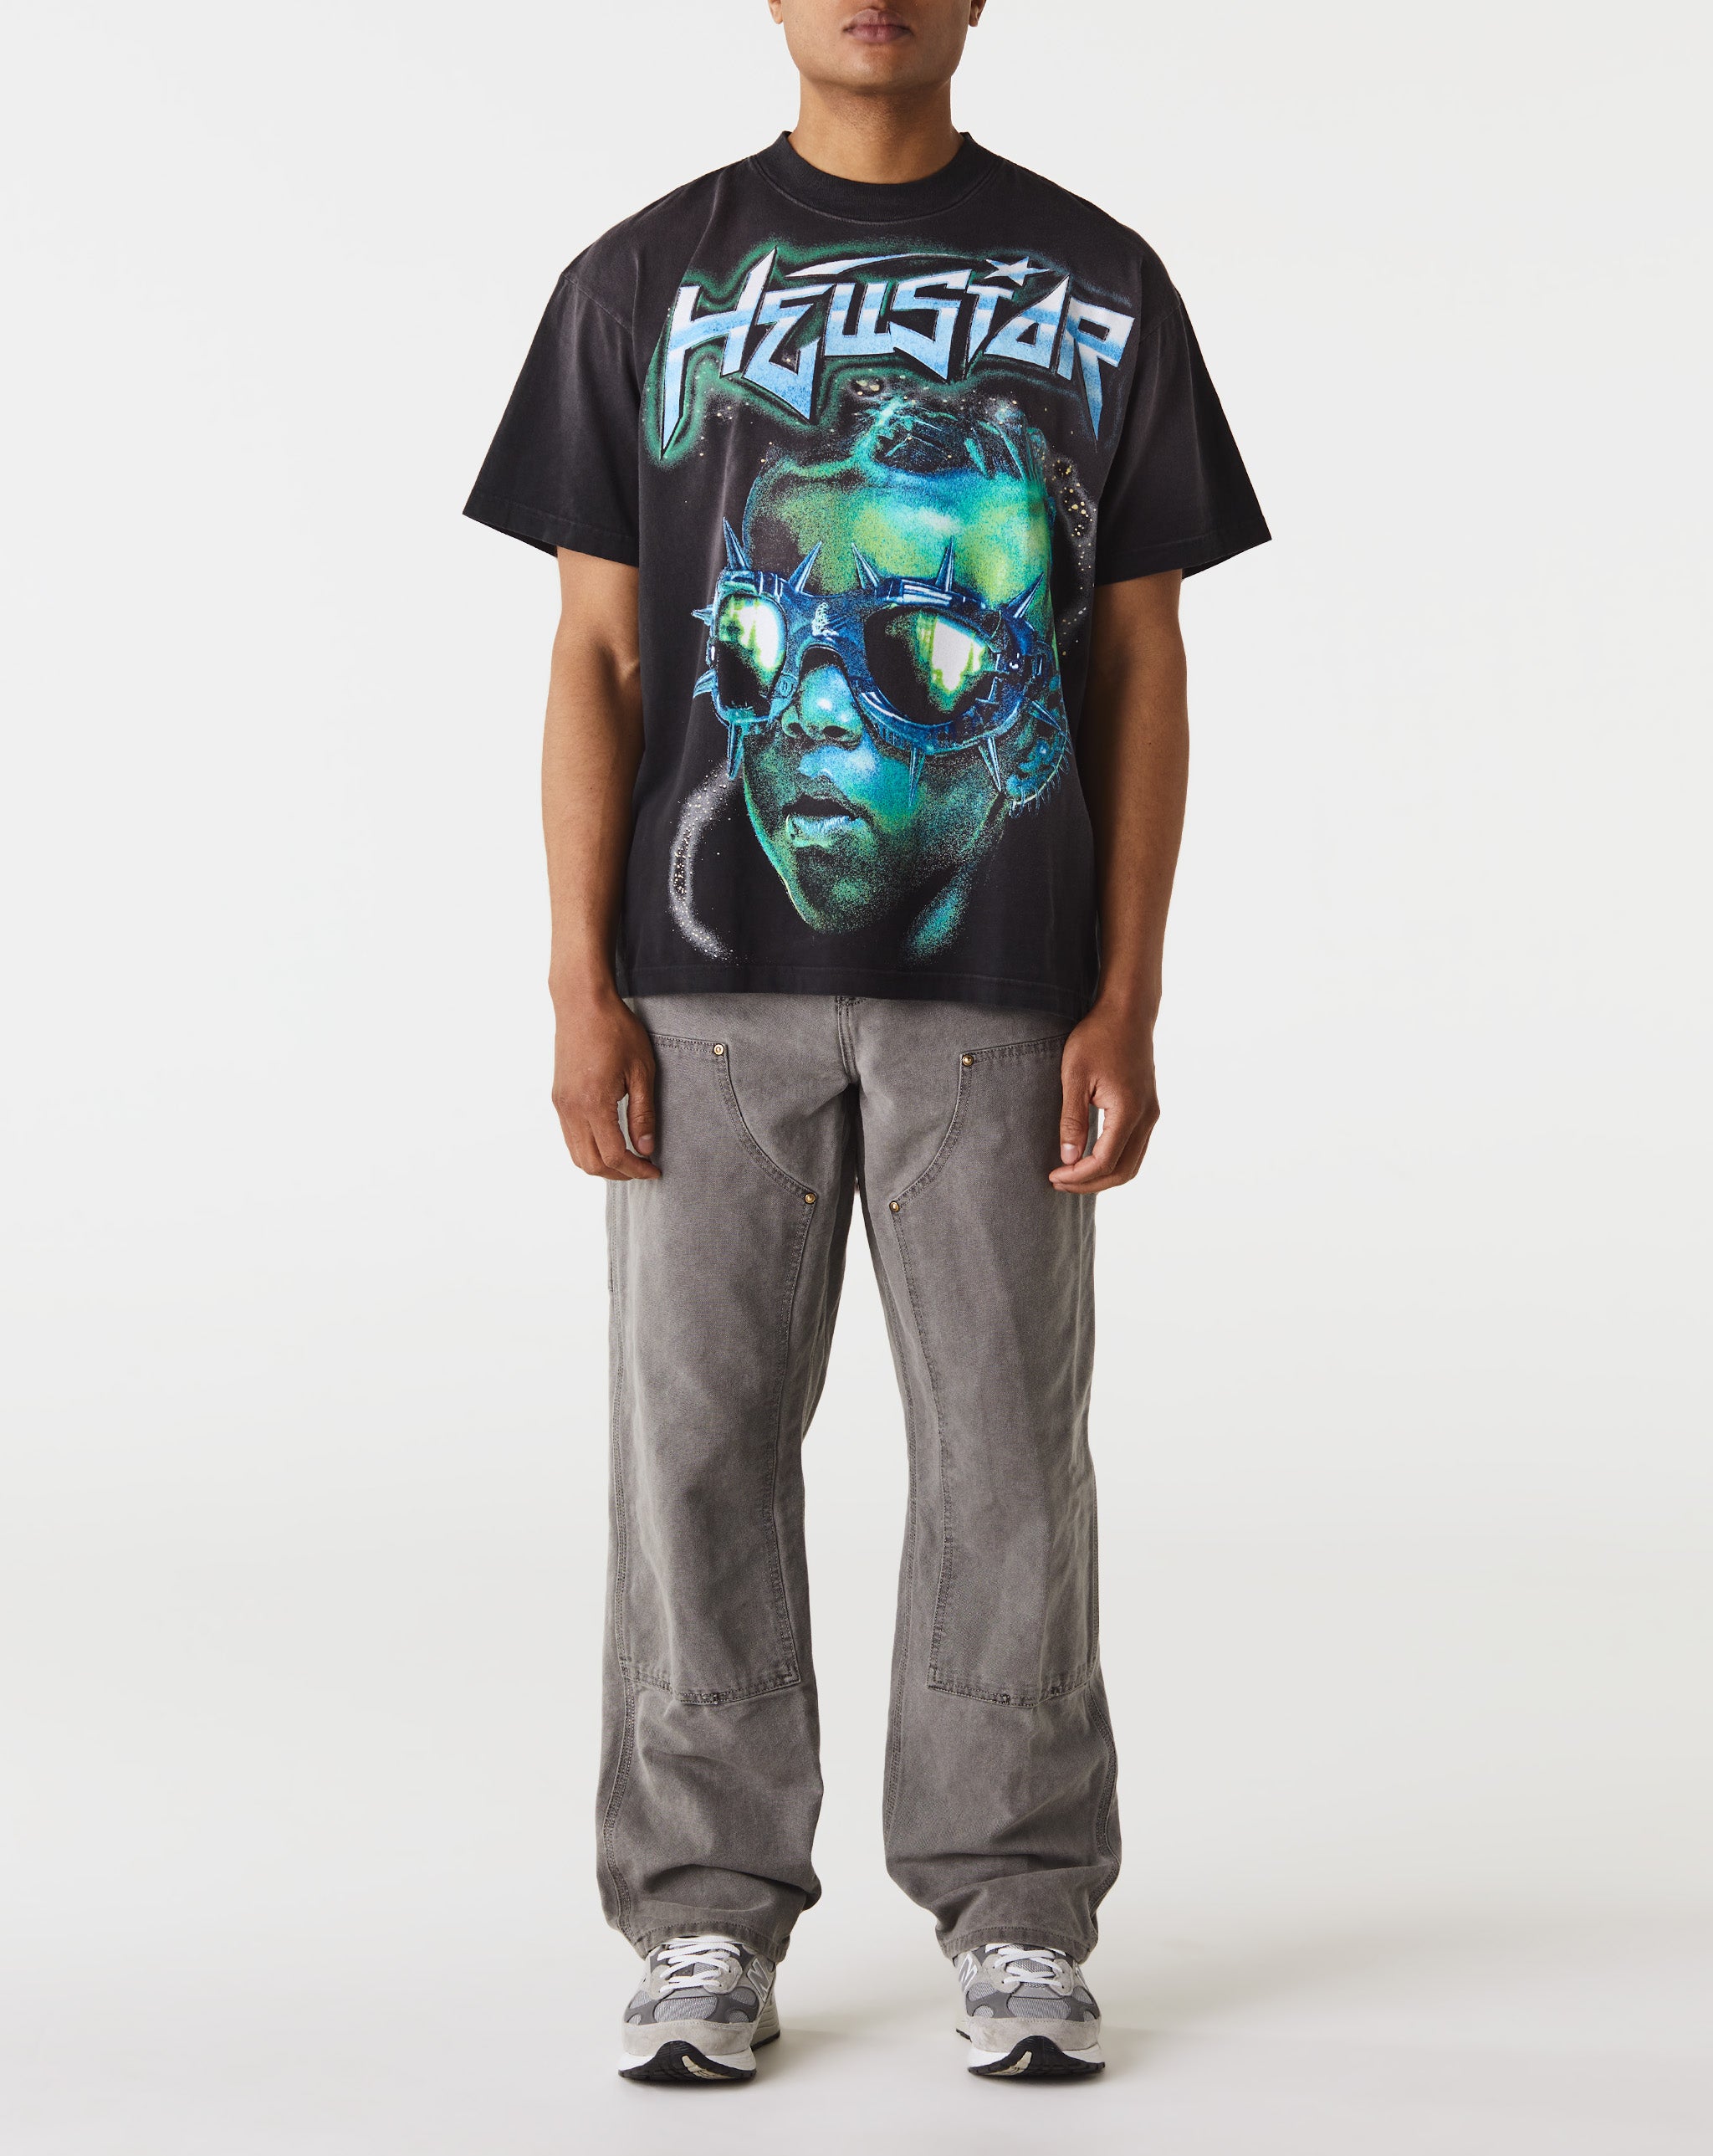 Hellstar The Future T-Shirt  - Cheap Urlfreeze Jordan outlet